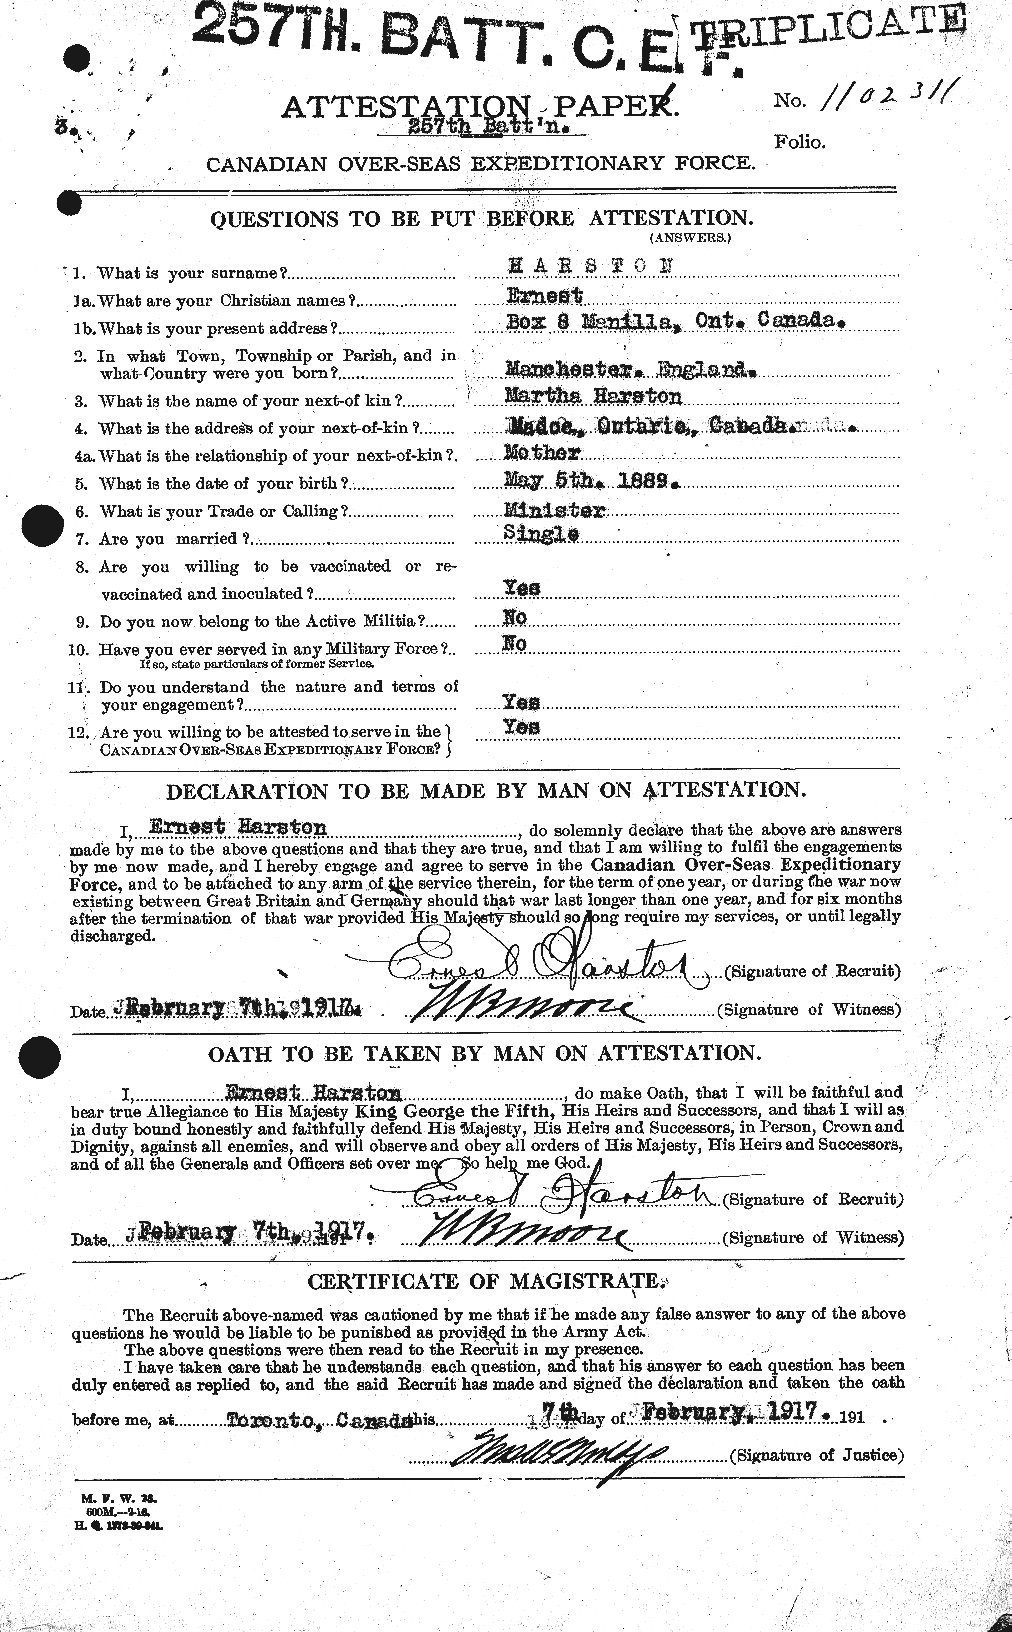 Dossiers du Personnel de la Première Guerre mondiale - CEC 381783a